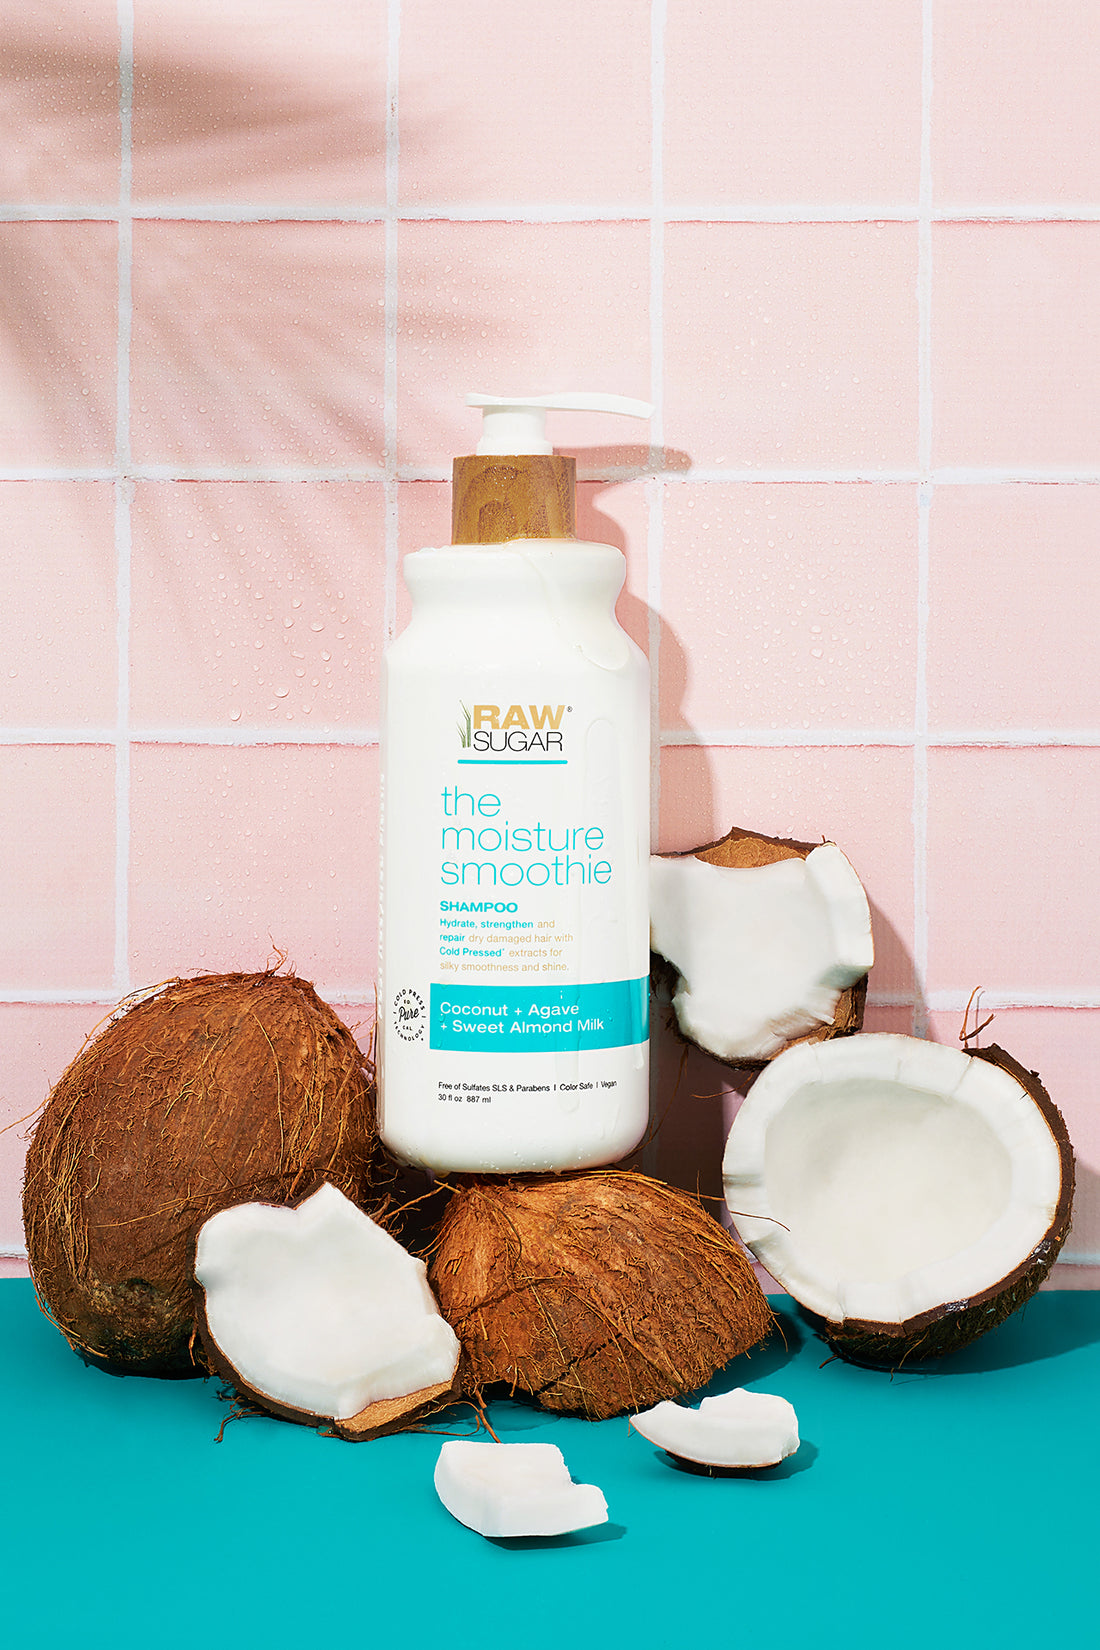 shampoo in bathroom next to coconut halves